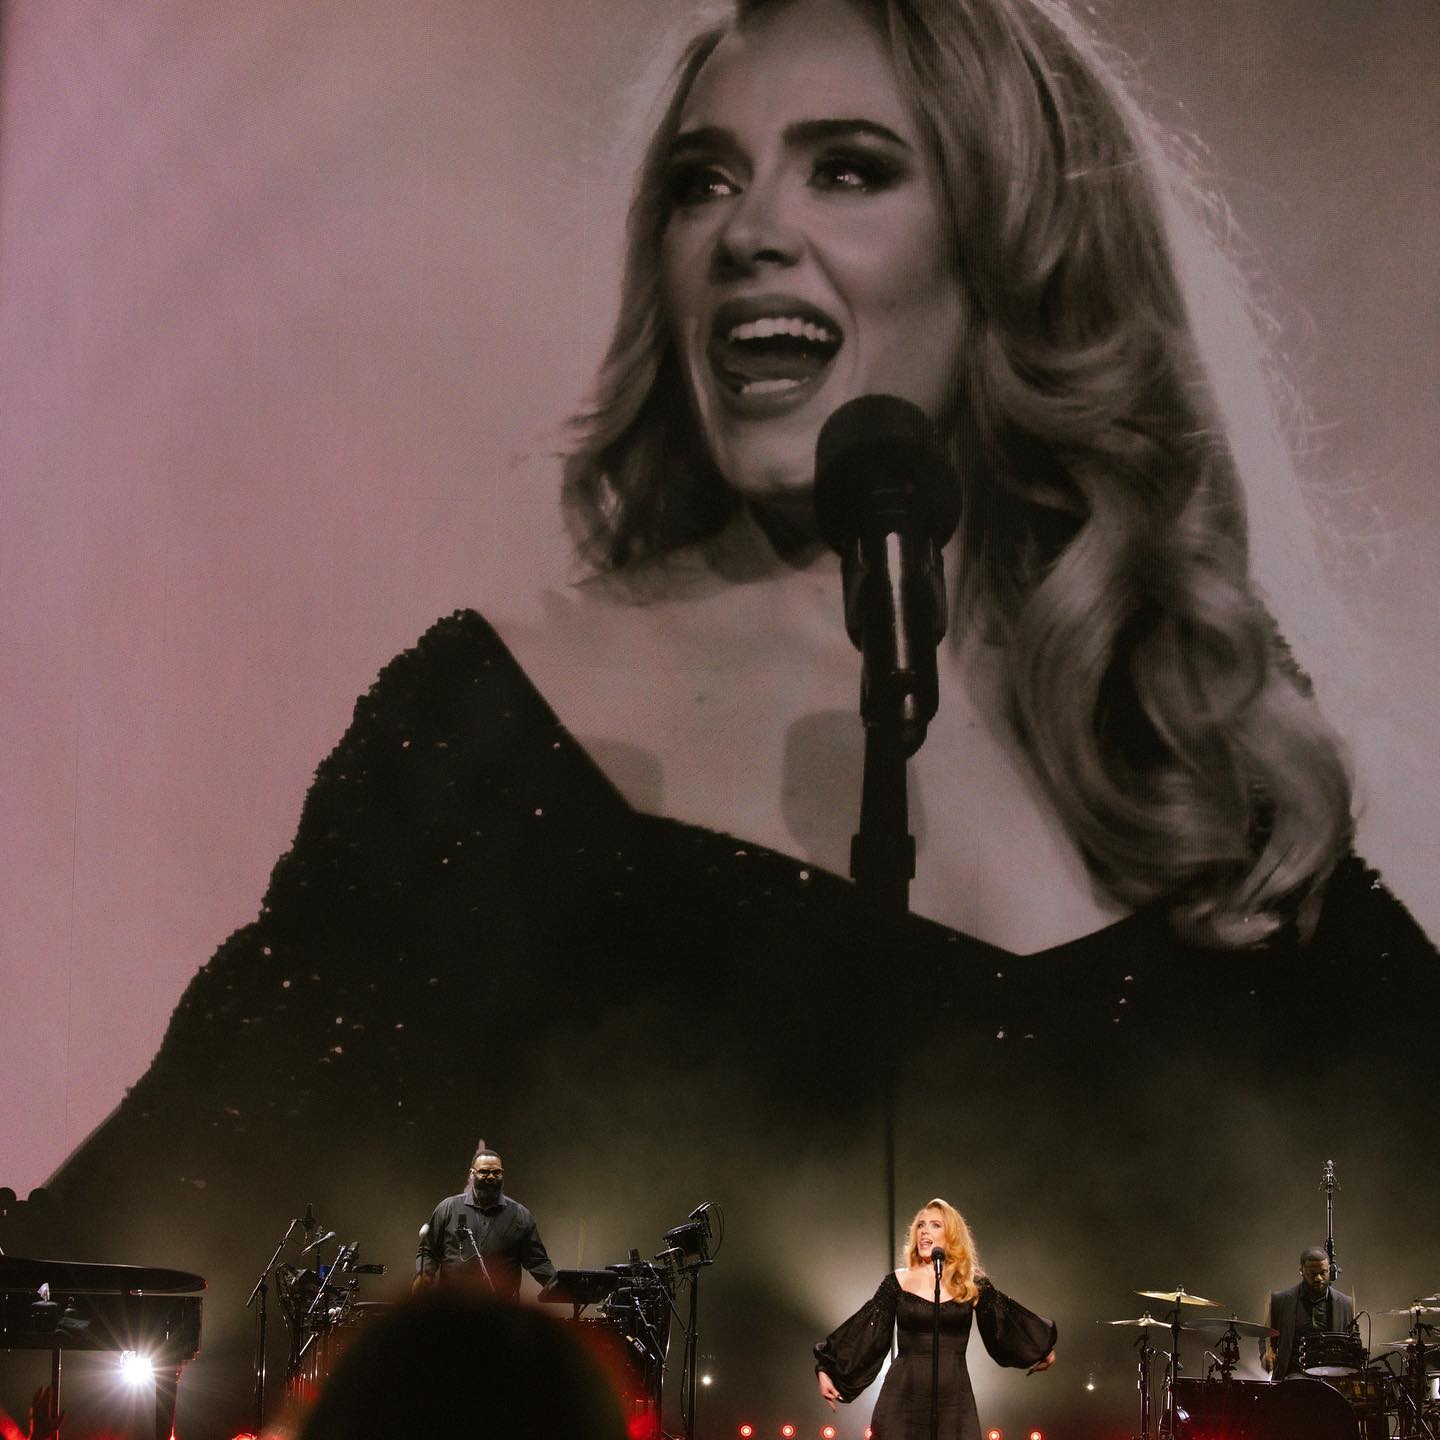 Η Adele αναβάλλει τις παραστάσεις της στο Λας Βέγκας λόγω υγείας- Τι συμβαίνει με τη star